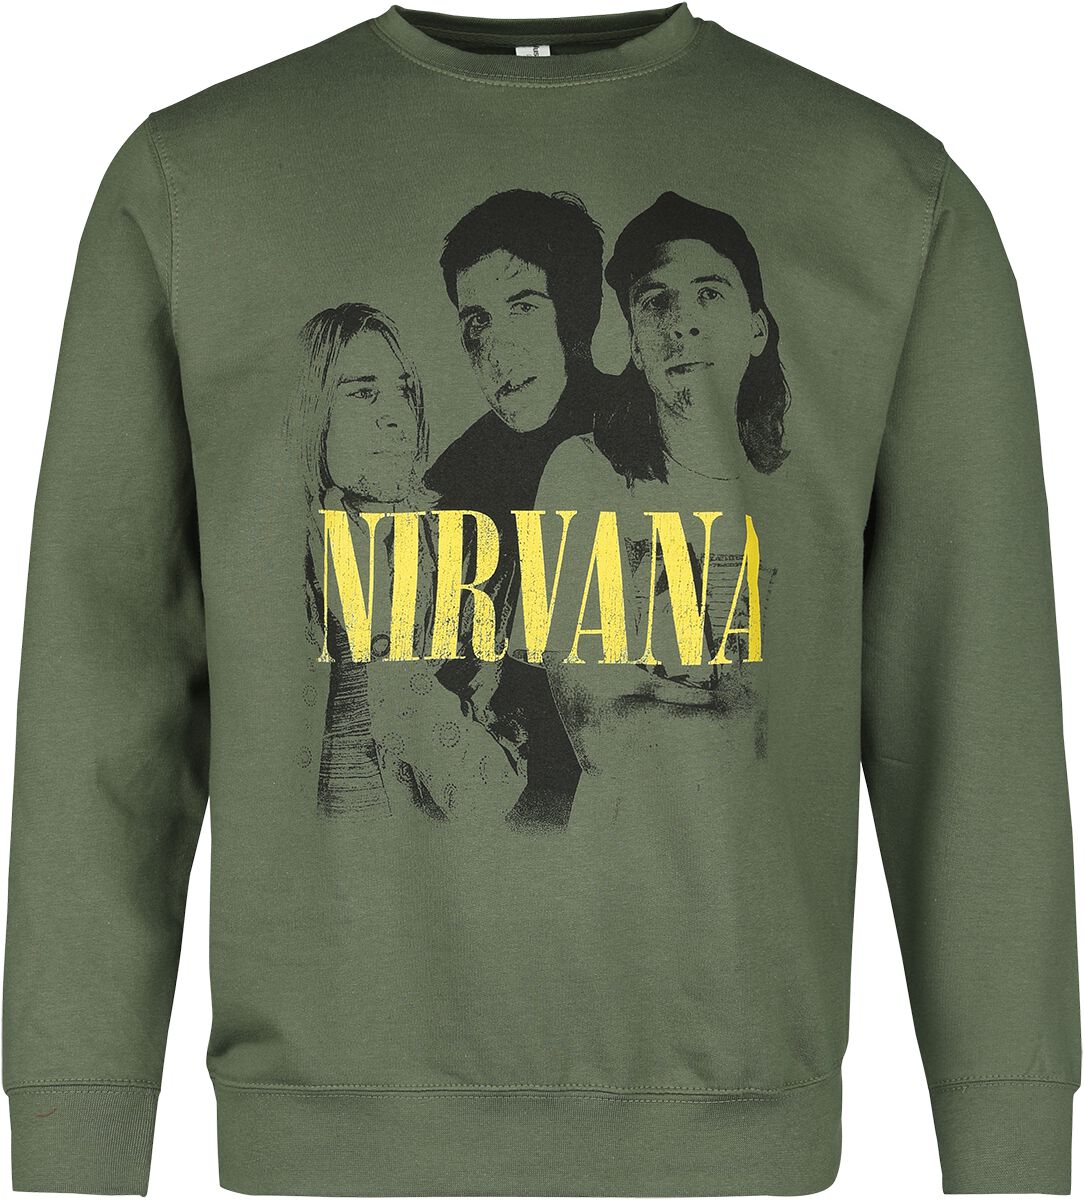 Nirvana Langarmshirt - Photo - S bis XXL - für Männer - Größe M - grün  - Lizenziertes Merchandise!